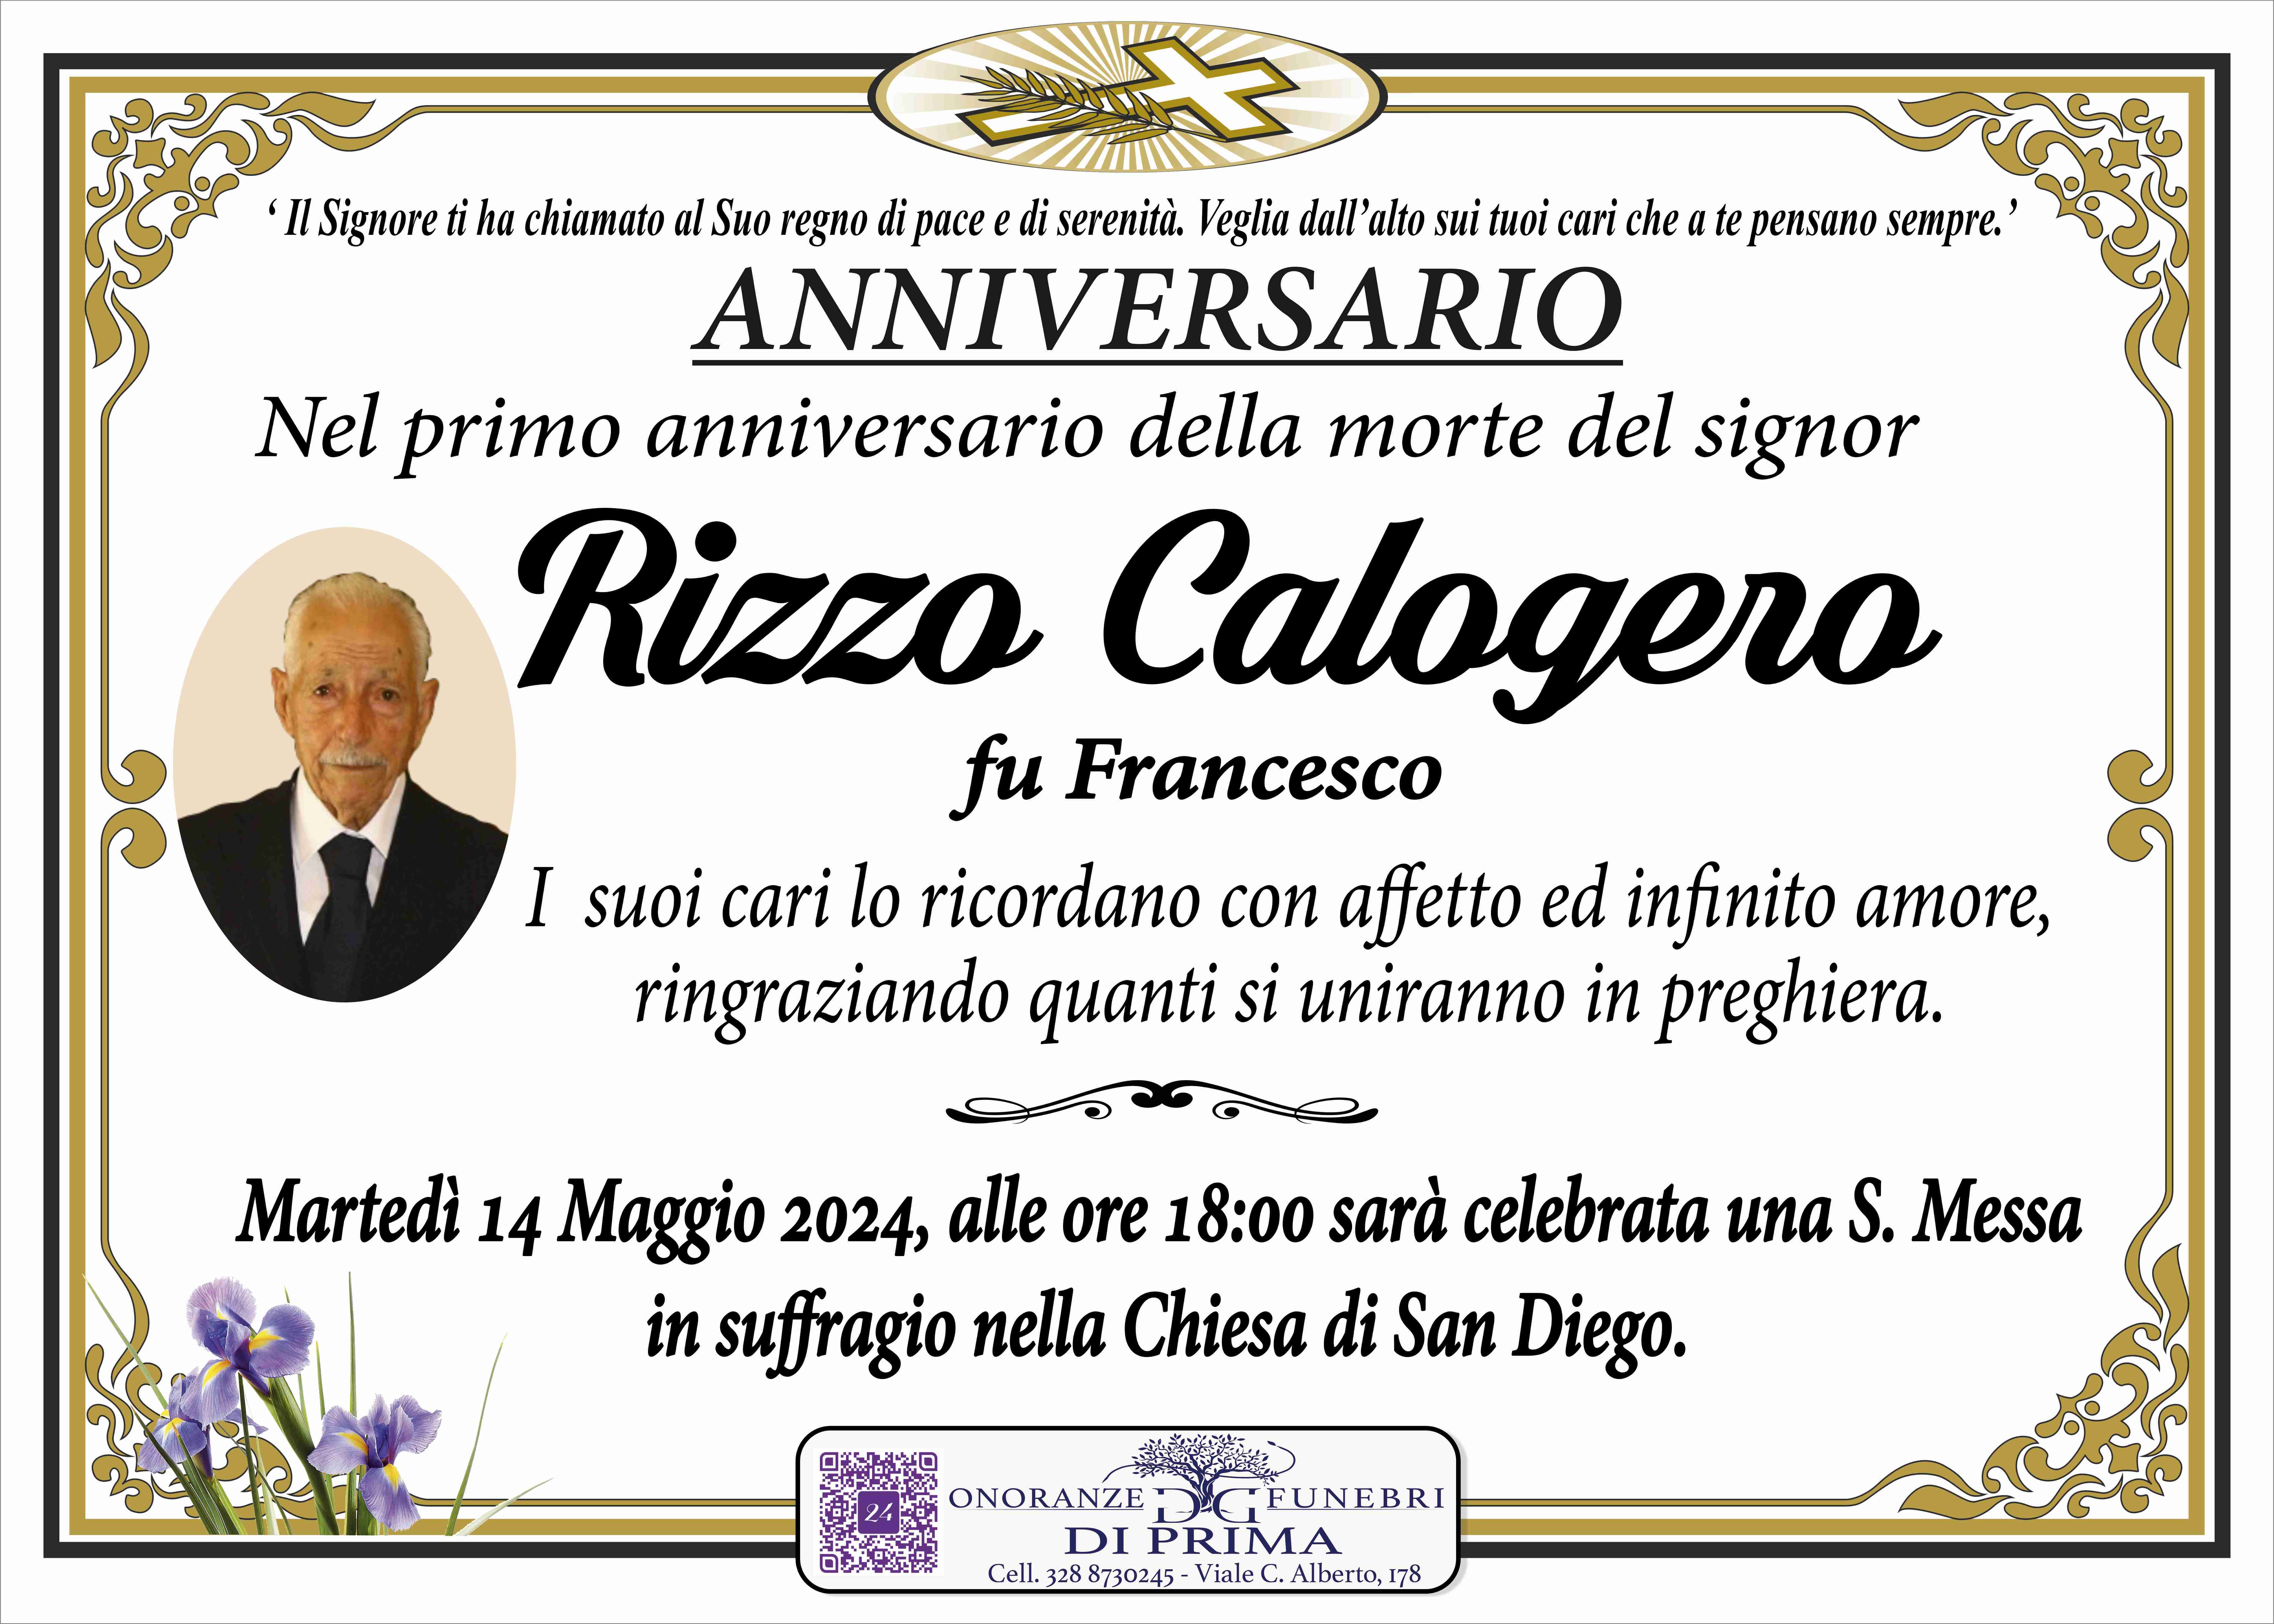 Calogero Rizzo